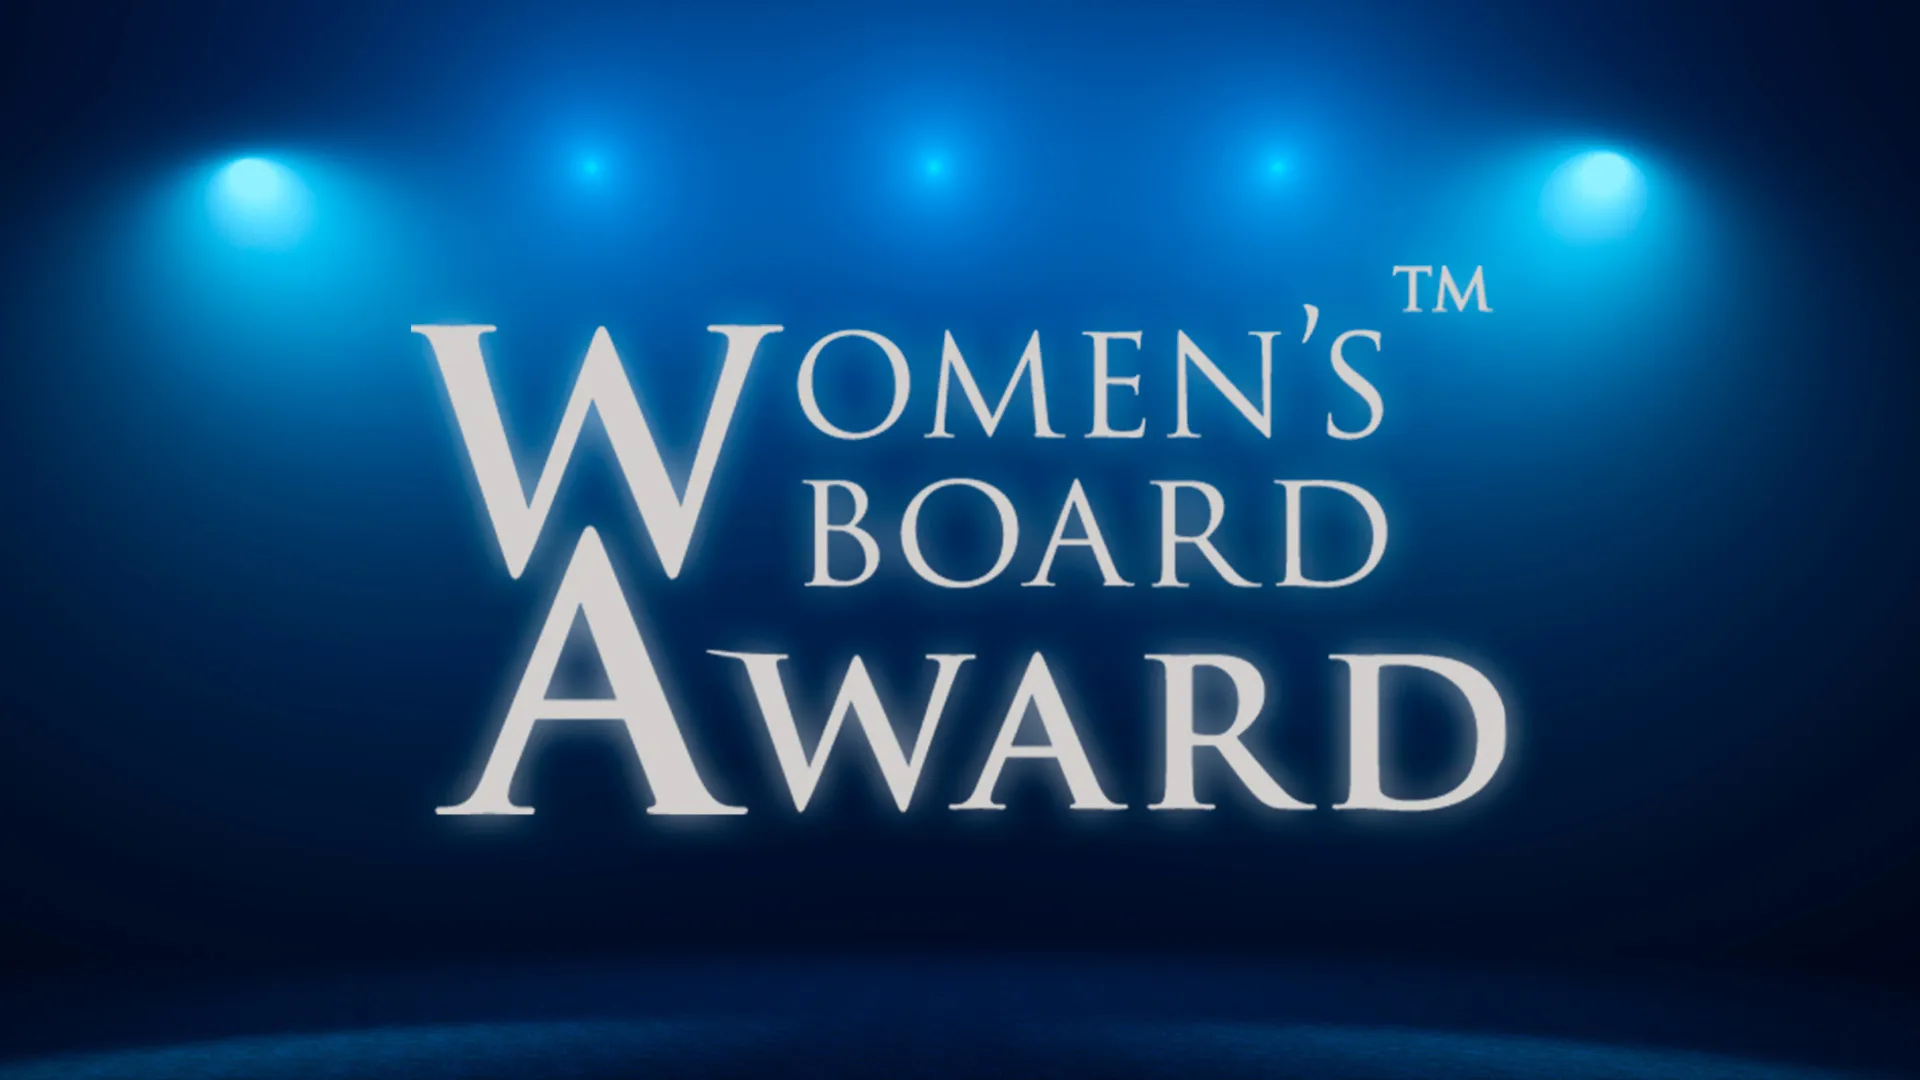 Women’s Board Award 2021